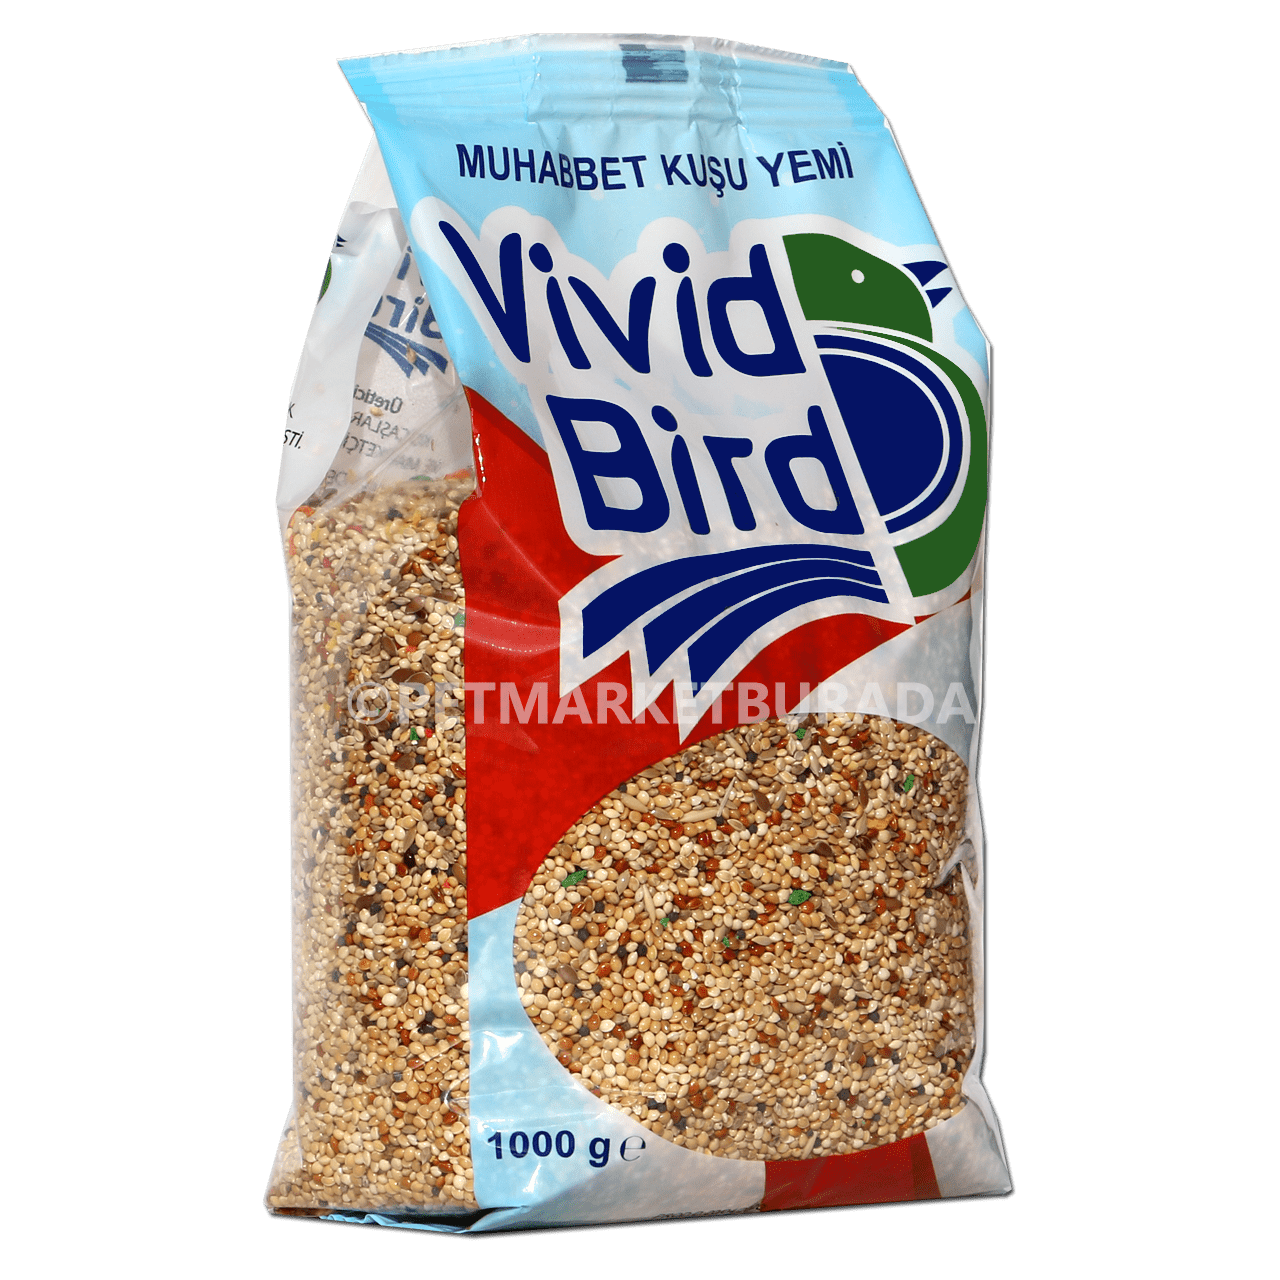 Vivid Bird Meyveli Karışık Muhabbet Kuşu Yemi 1 kg